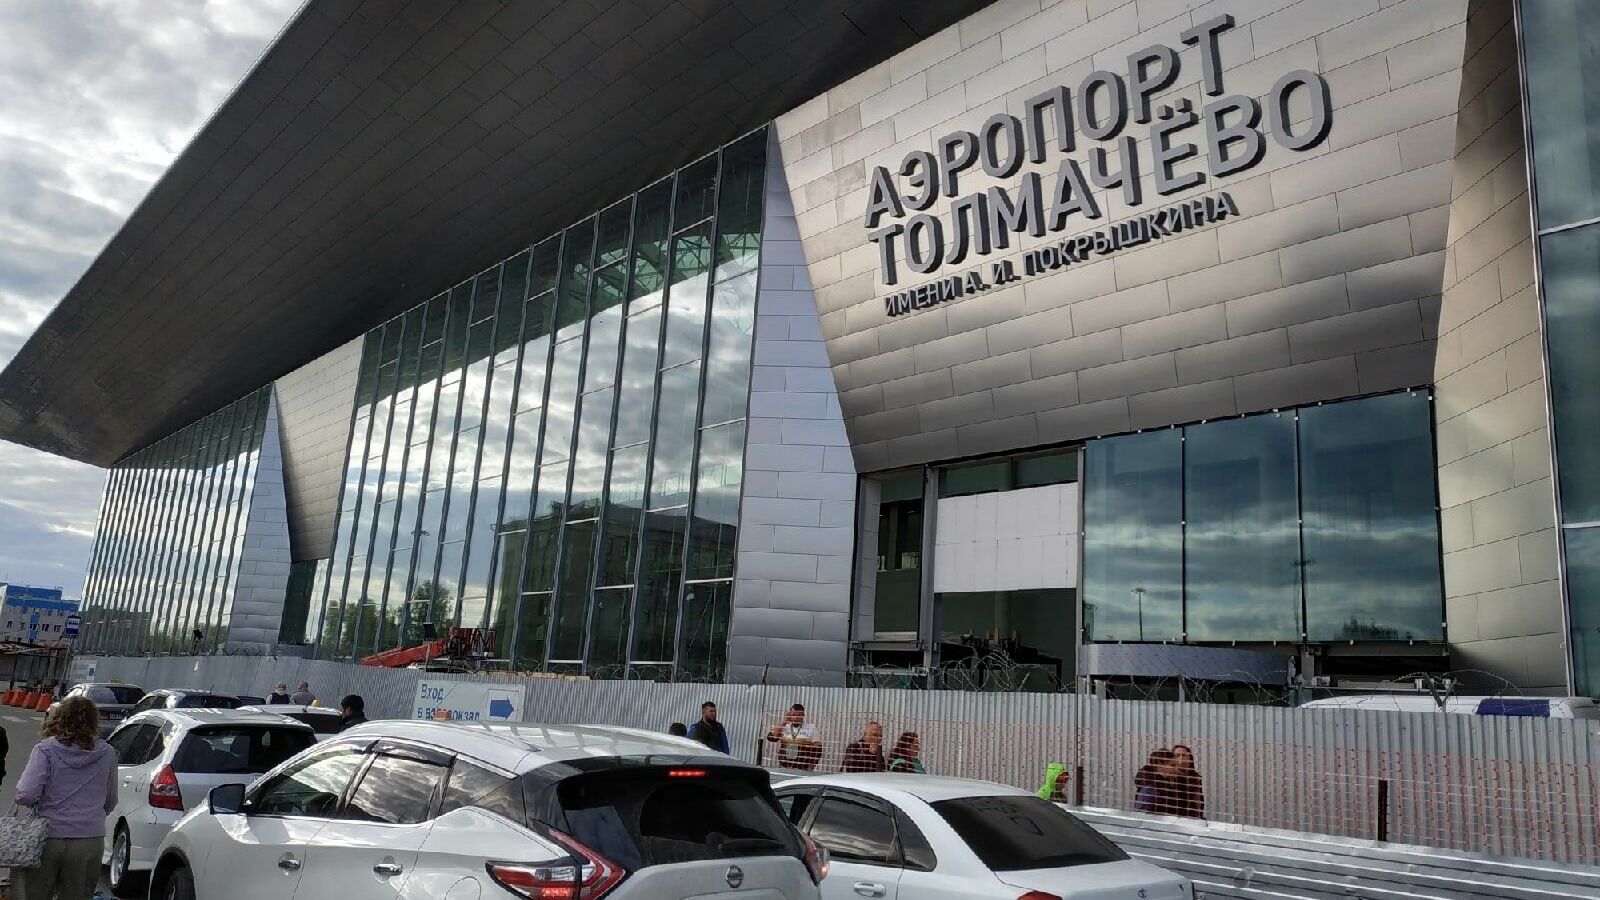 Новосибирский аэропорт построит терминал для граждан соседних серпублик.